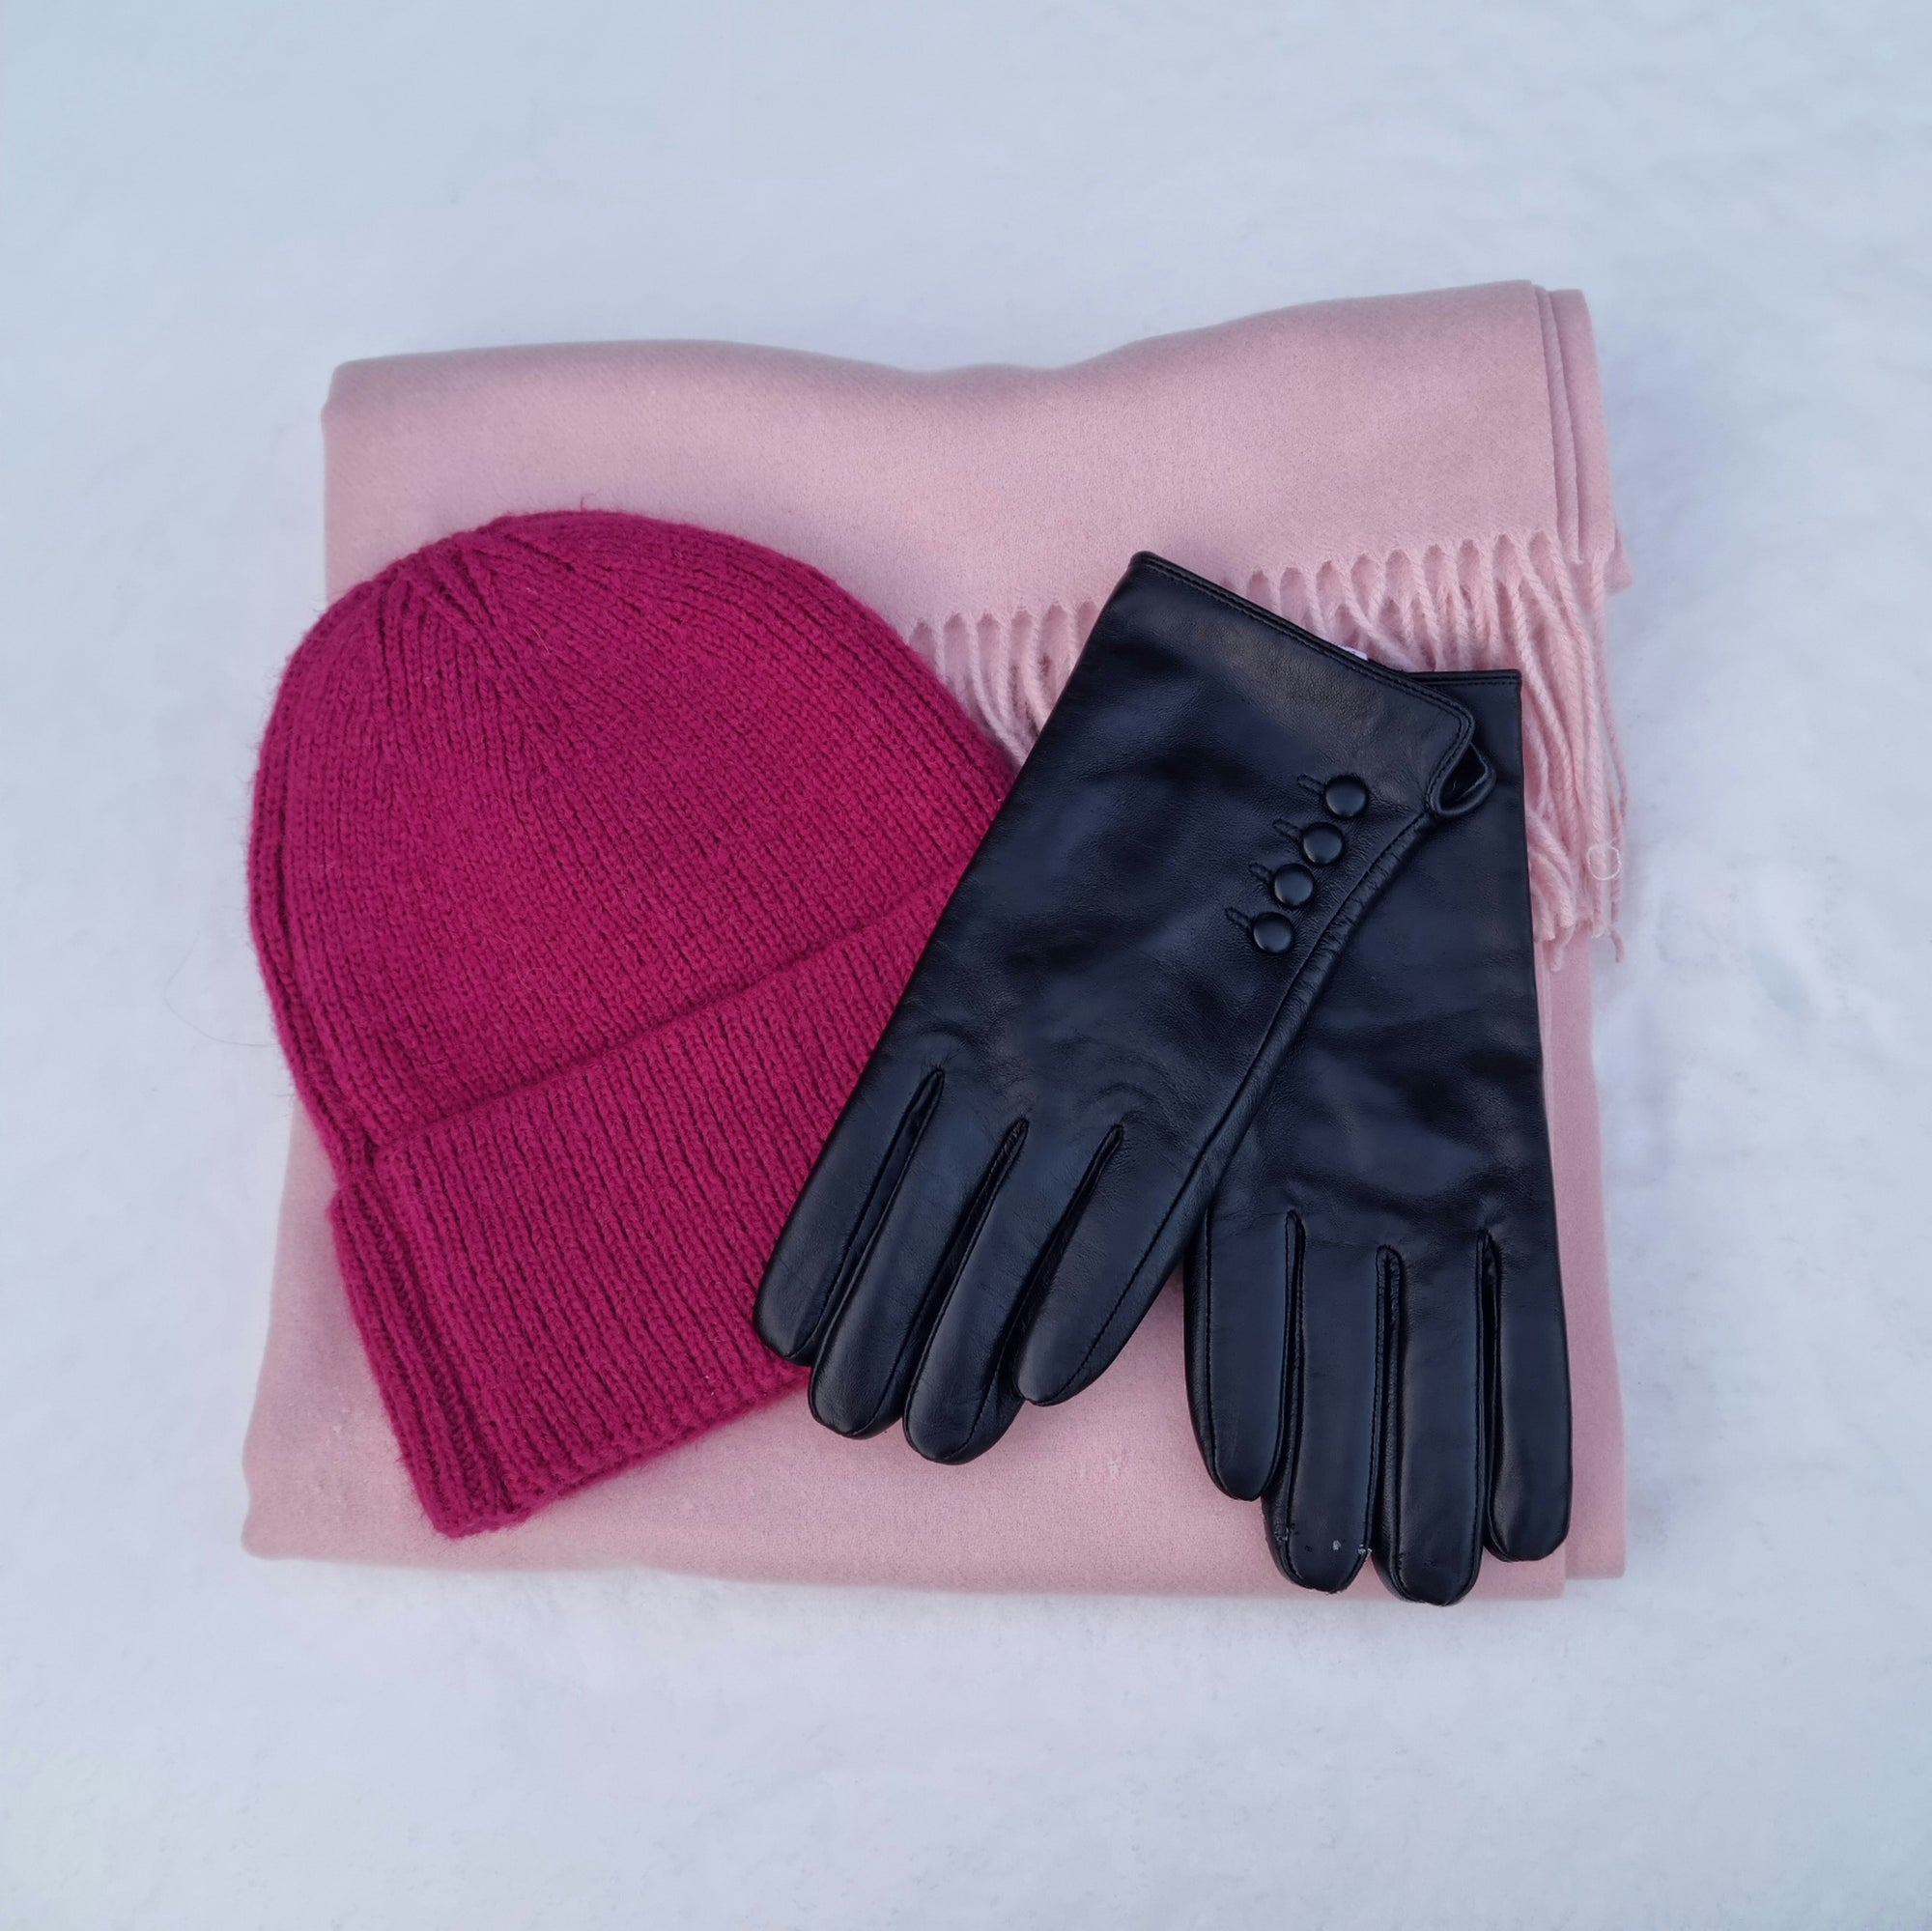 Isolde black gloves